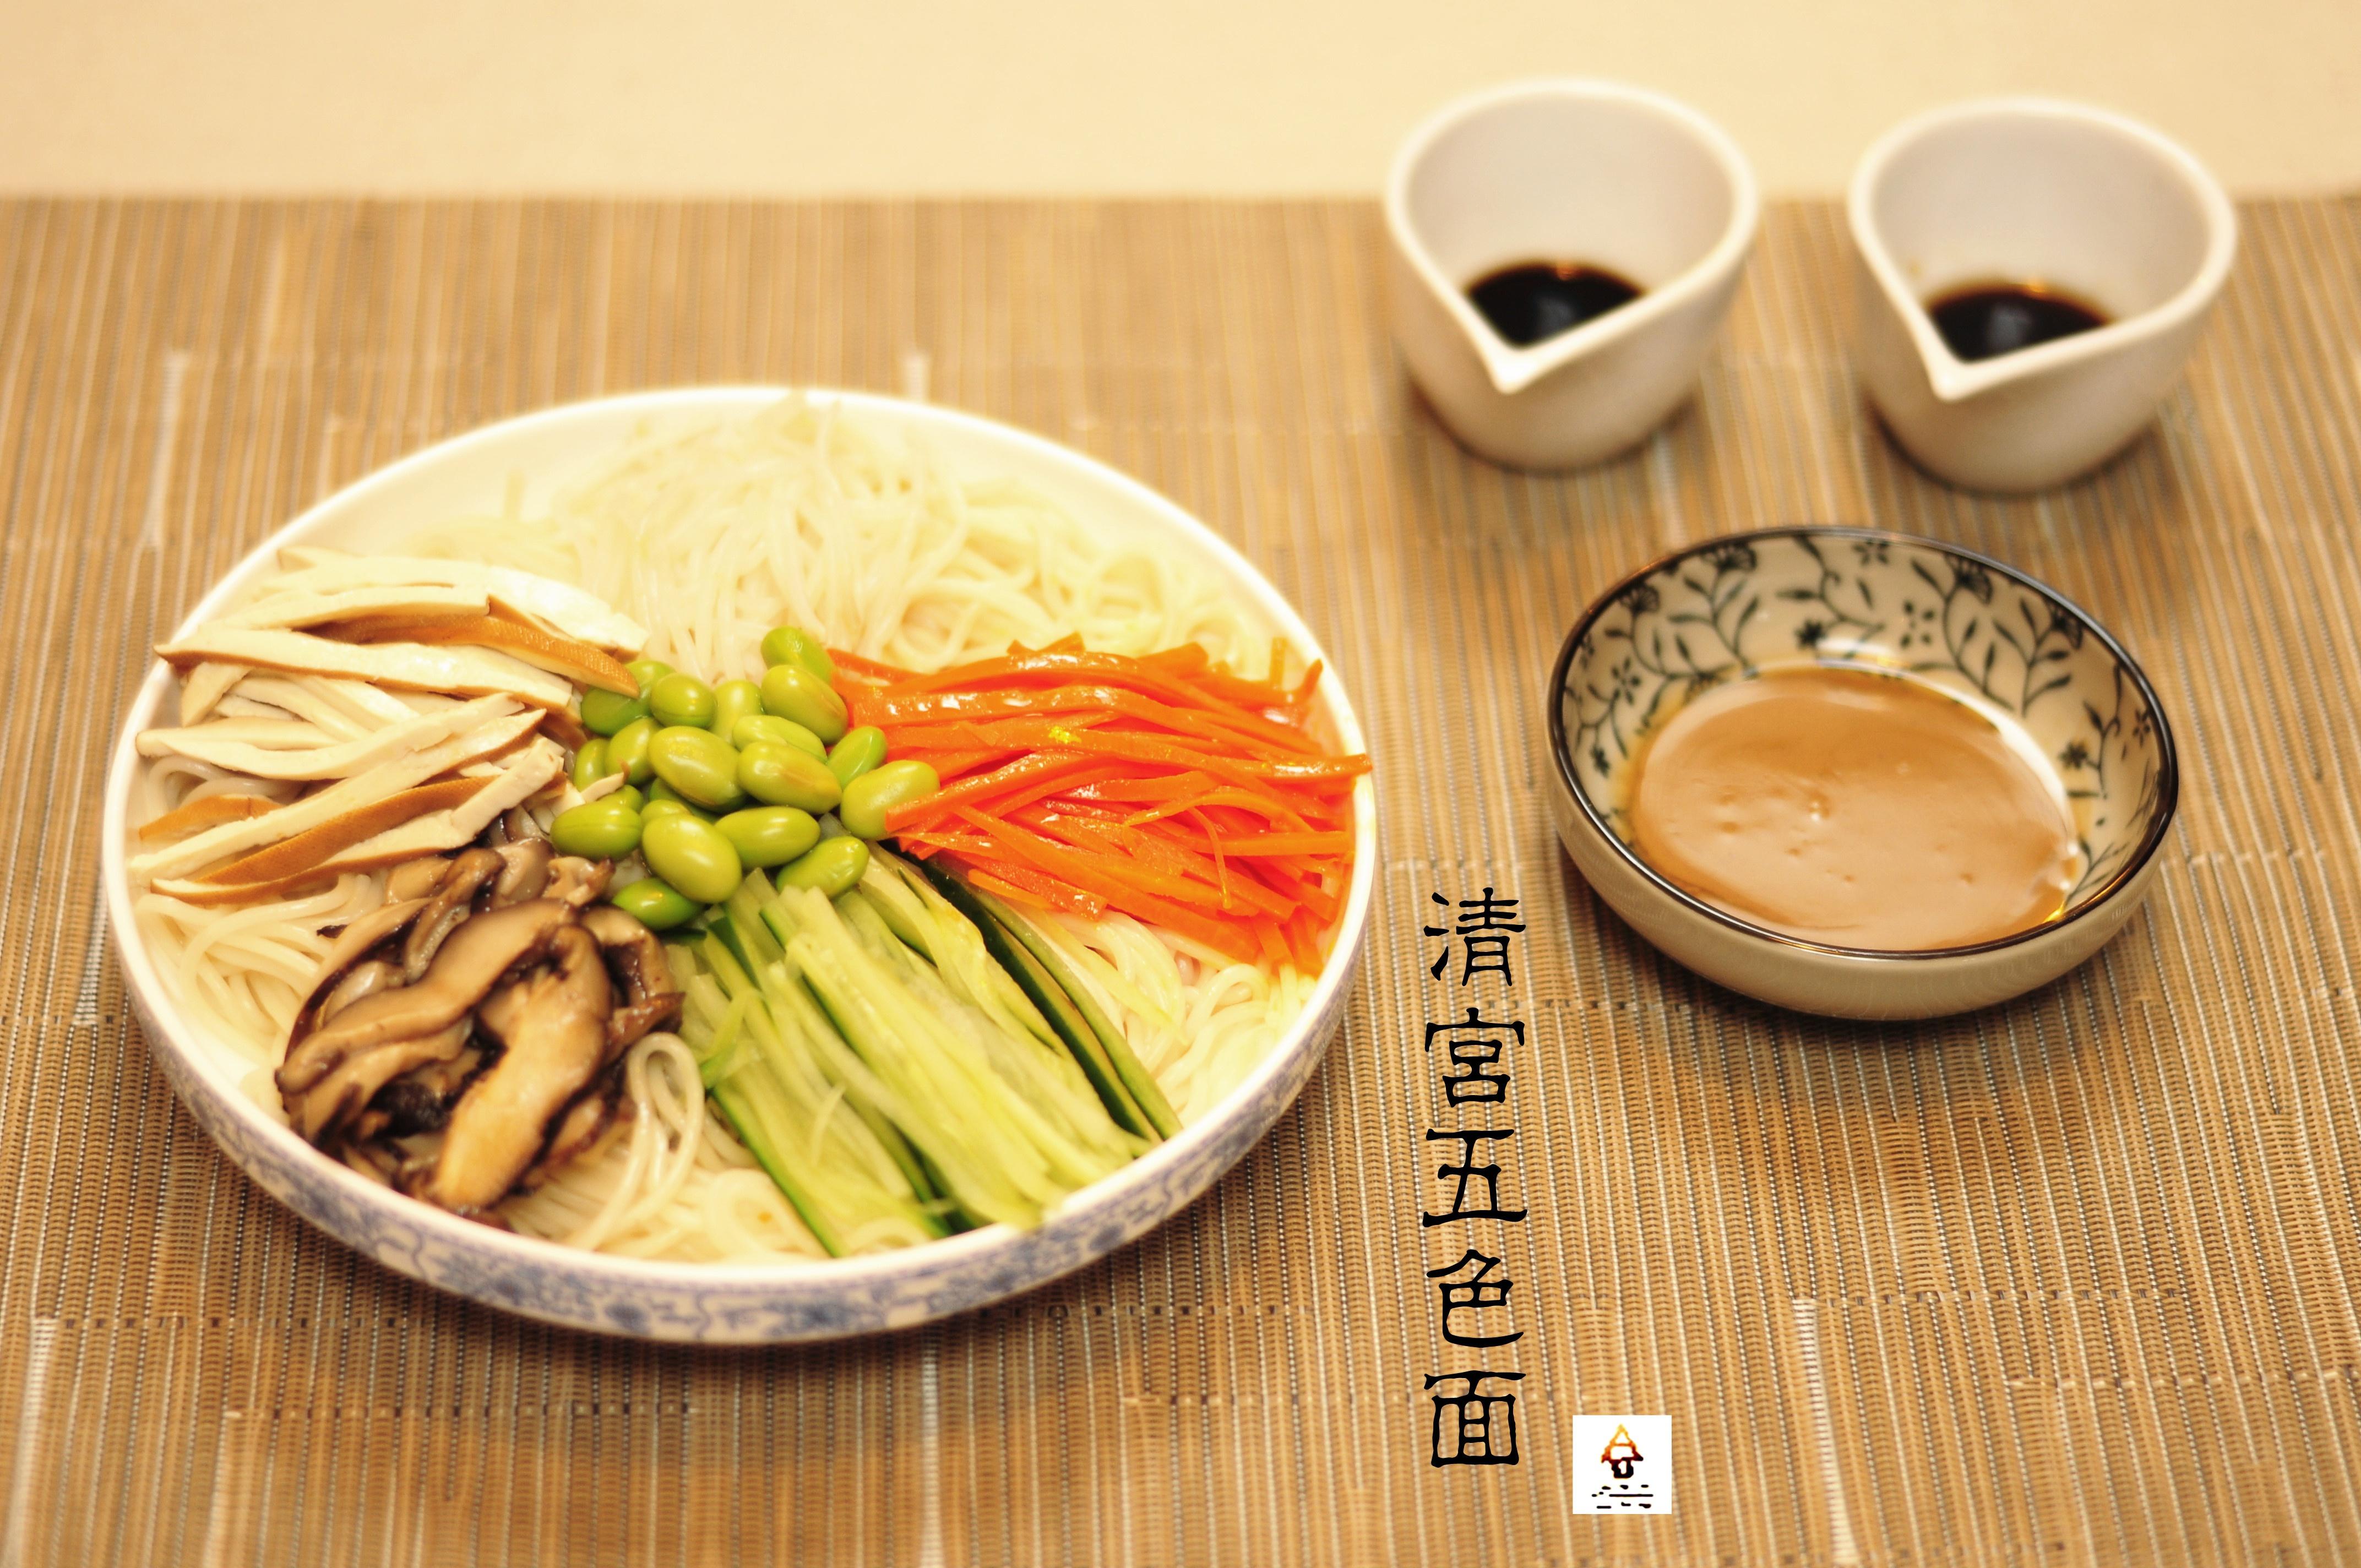 清宫五色面 (Five-color Noodles Served with Three Sauces)的做法